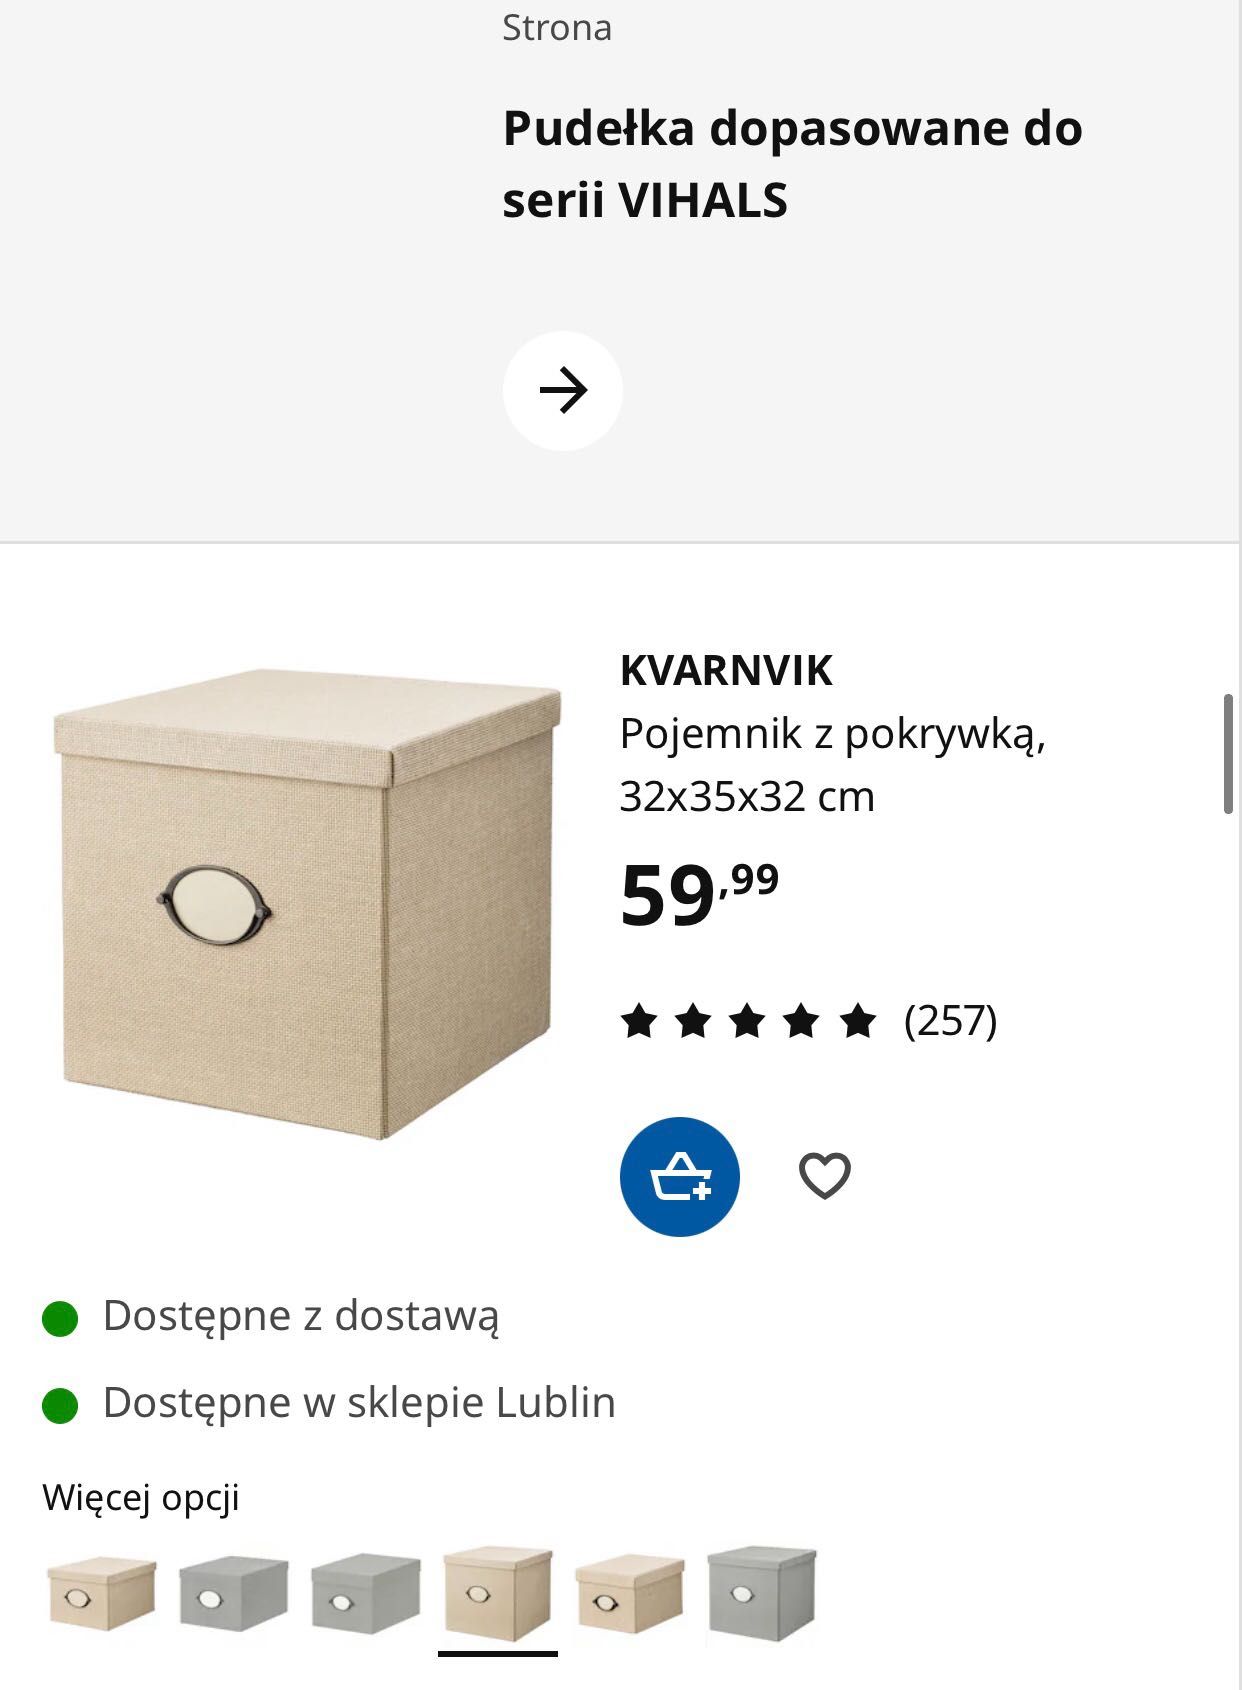 Pudełka Ikea KVARNVIK